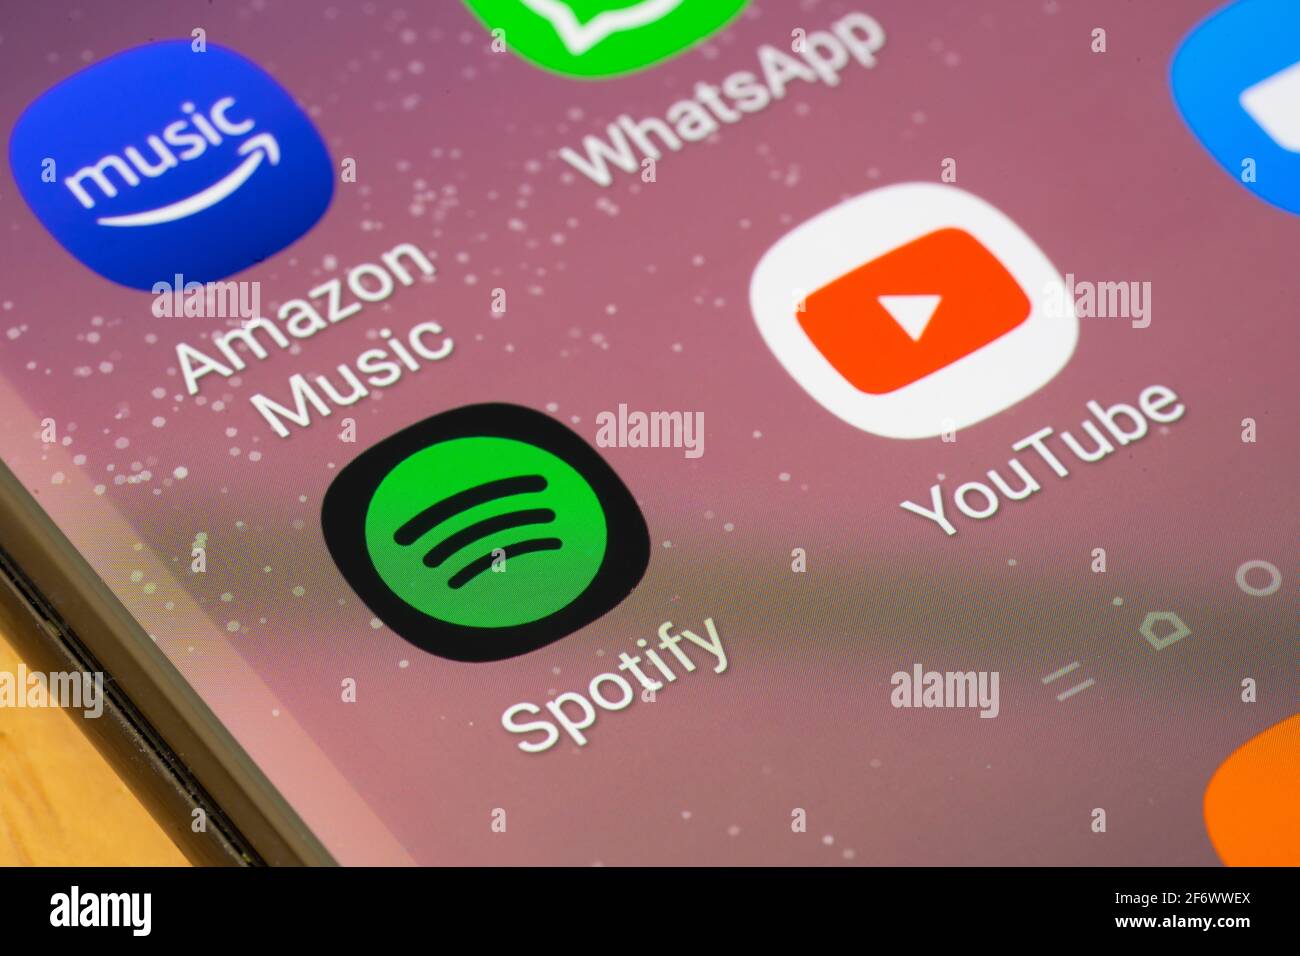 Eine Makroaufnahme der Spotify-App auf einem Smartphone-Bildschirm. Spotify ist ein Anbieter von Audio-Streaming- und Mediendiensten Stockfoto